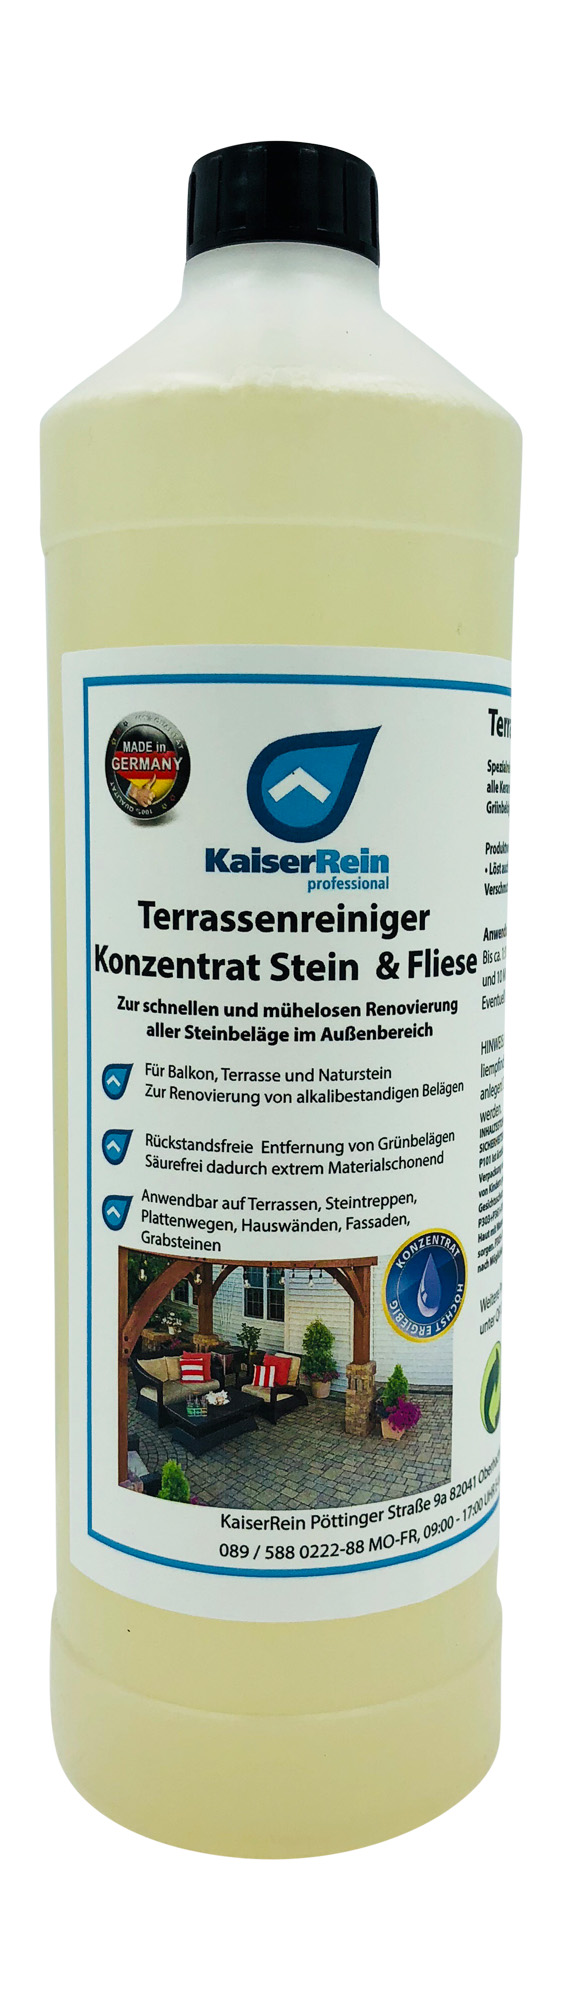 Terrassenreiniger  Konzentrat Stein  & Fliese Spezialreiniger zur gründlichen Reinigung aller Terass